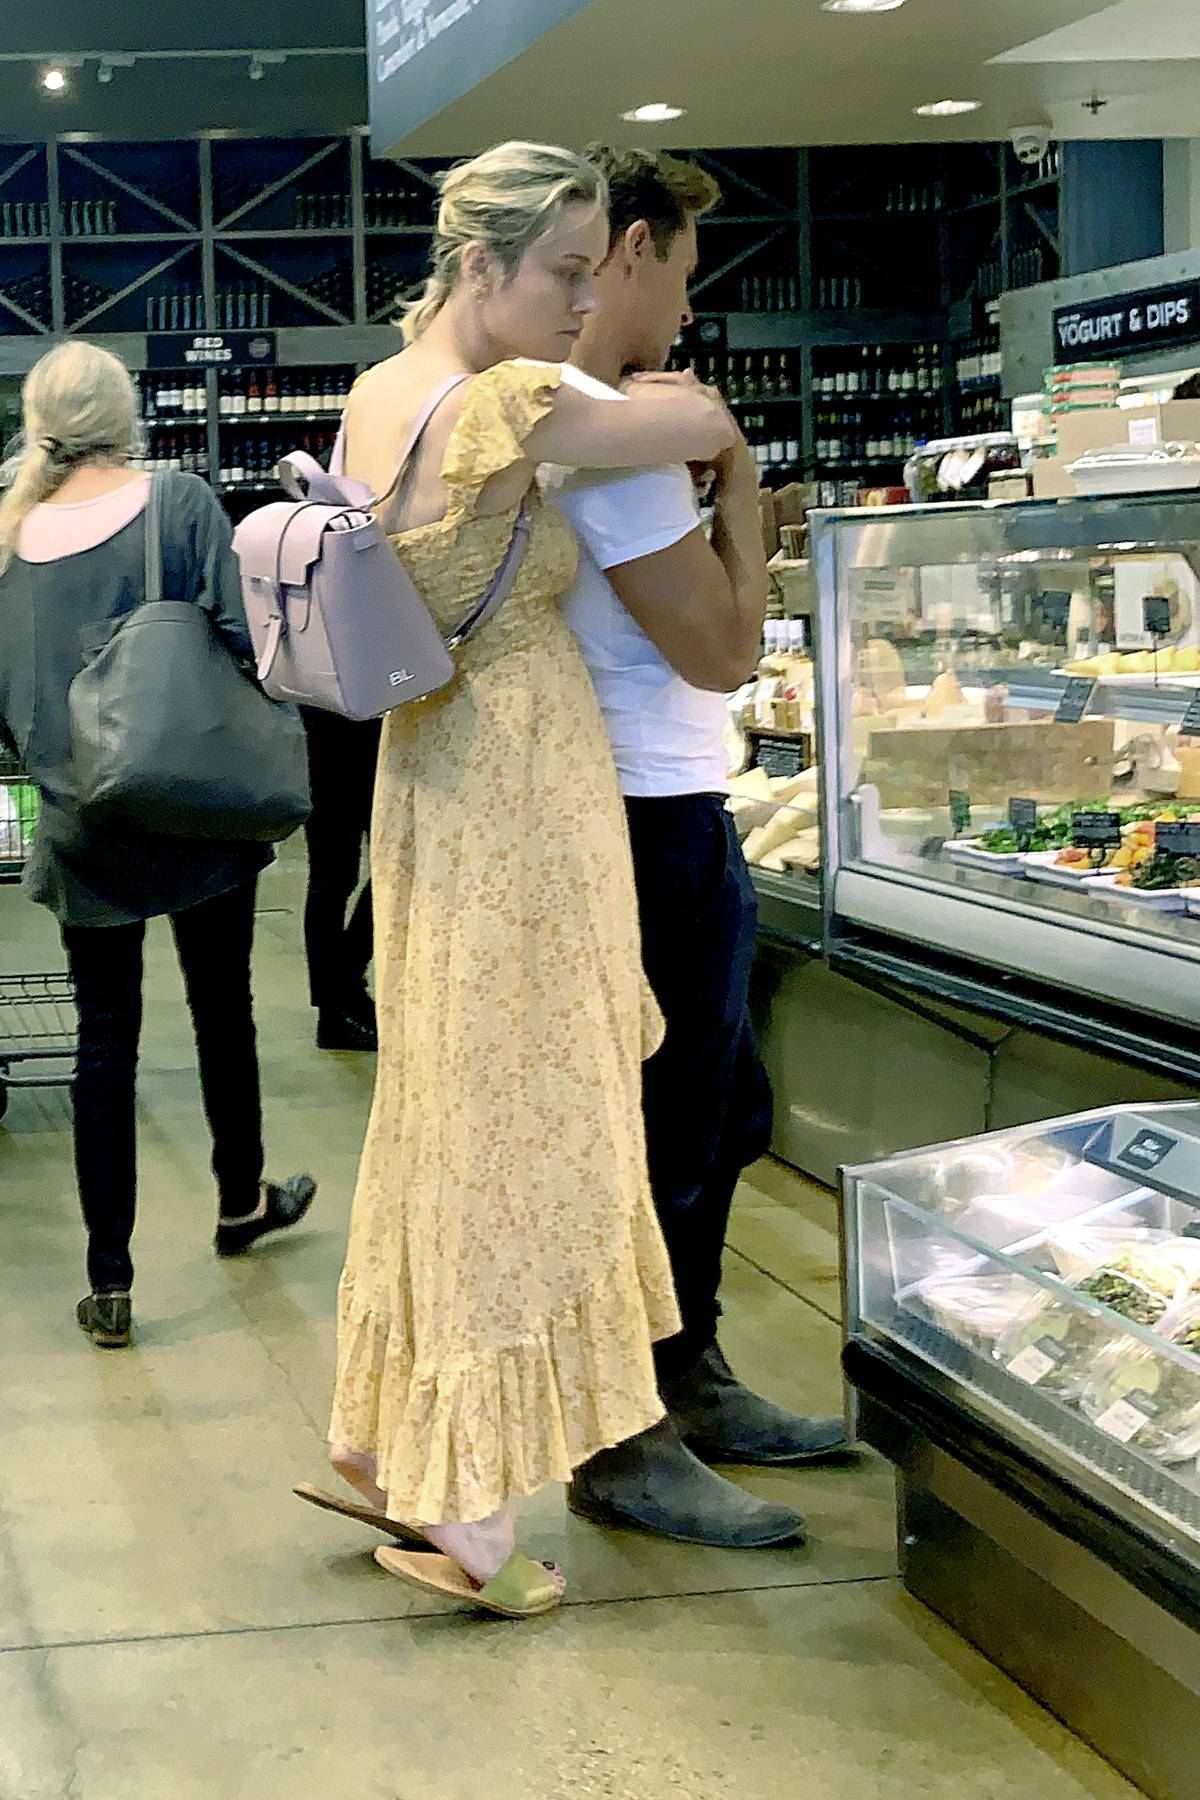 Elijah ja Brie pitelevät toisiaan ruokakaupassa